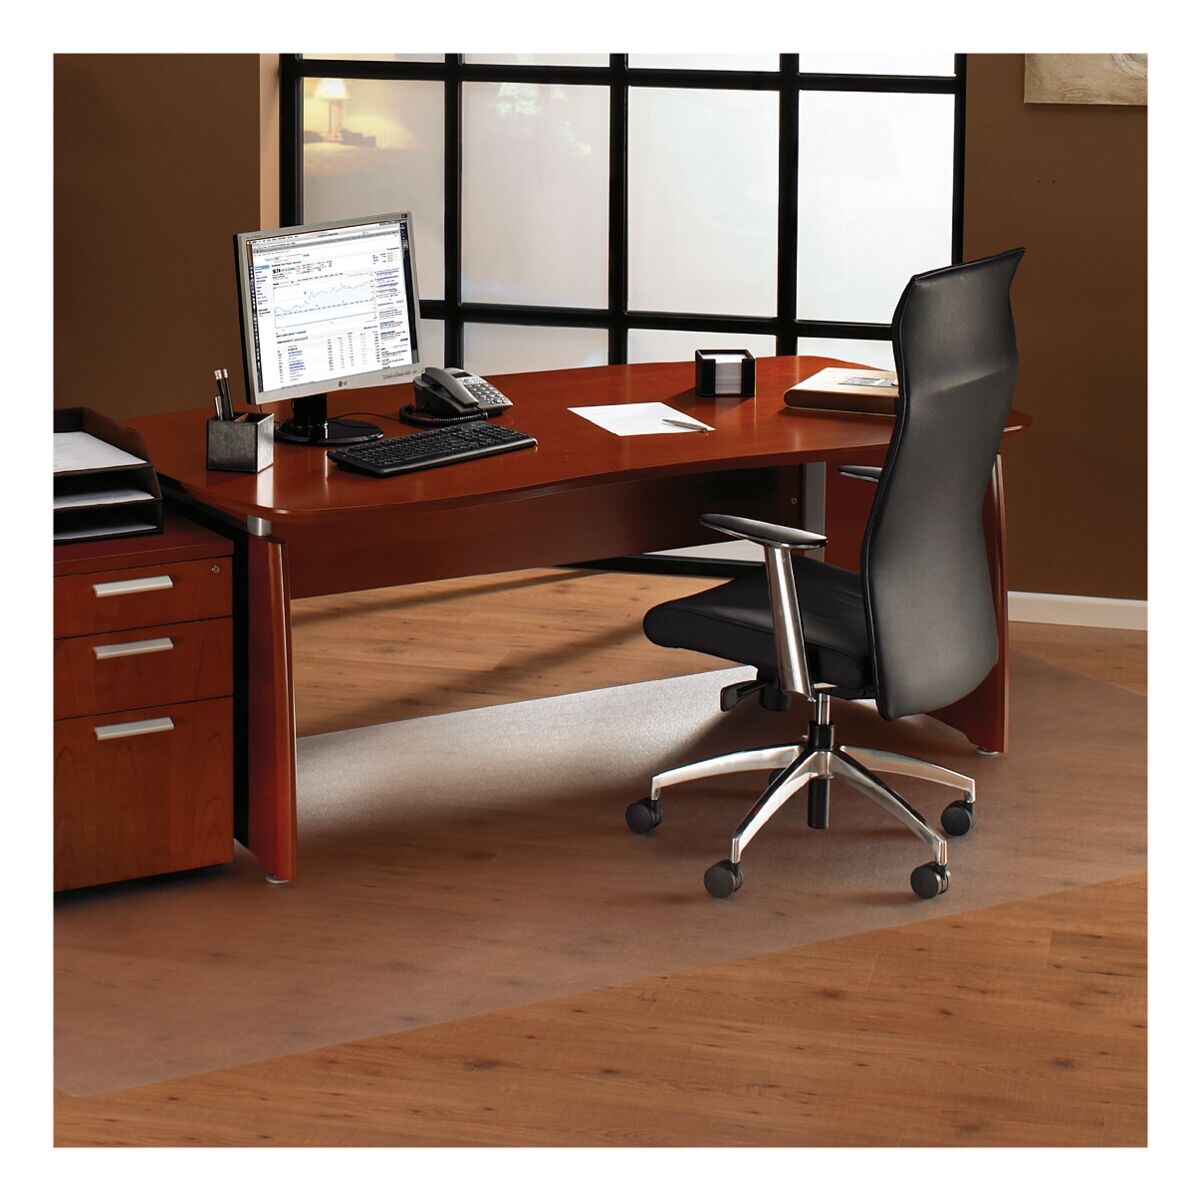 plaque protge-sol pour sols durs et moquettes, polycarbonate, rectangulaire 116 x 300 cm, OTTO Office Standard